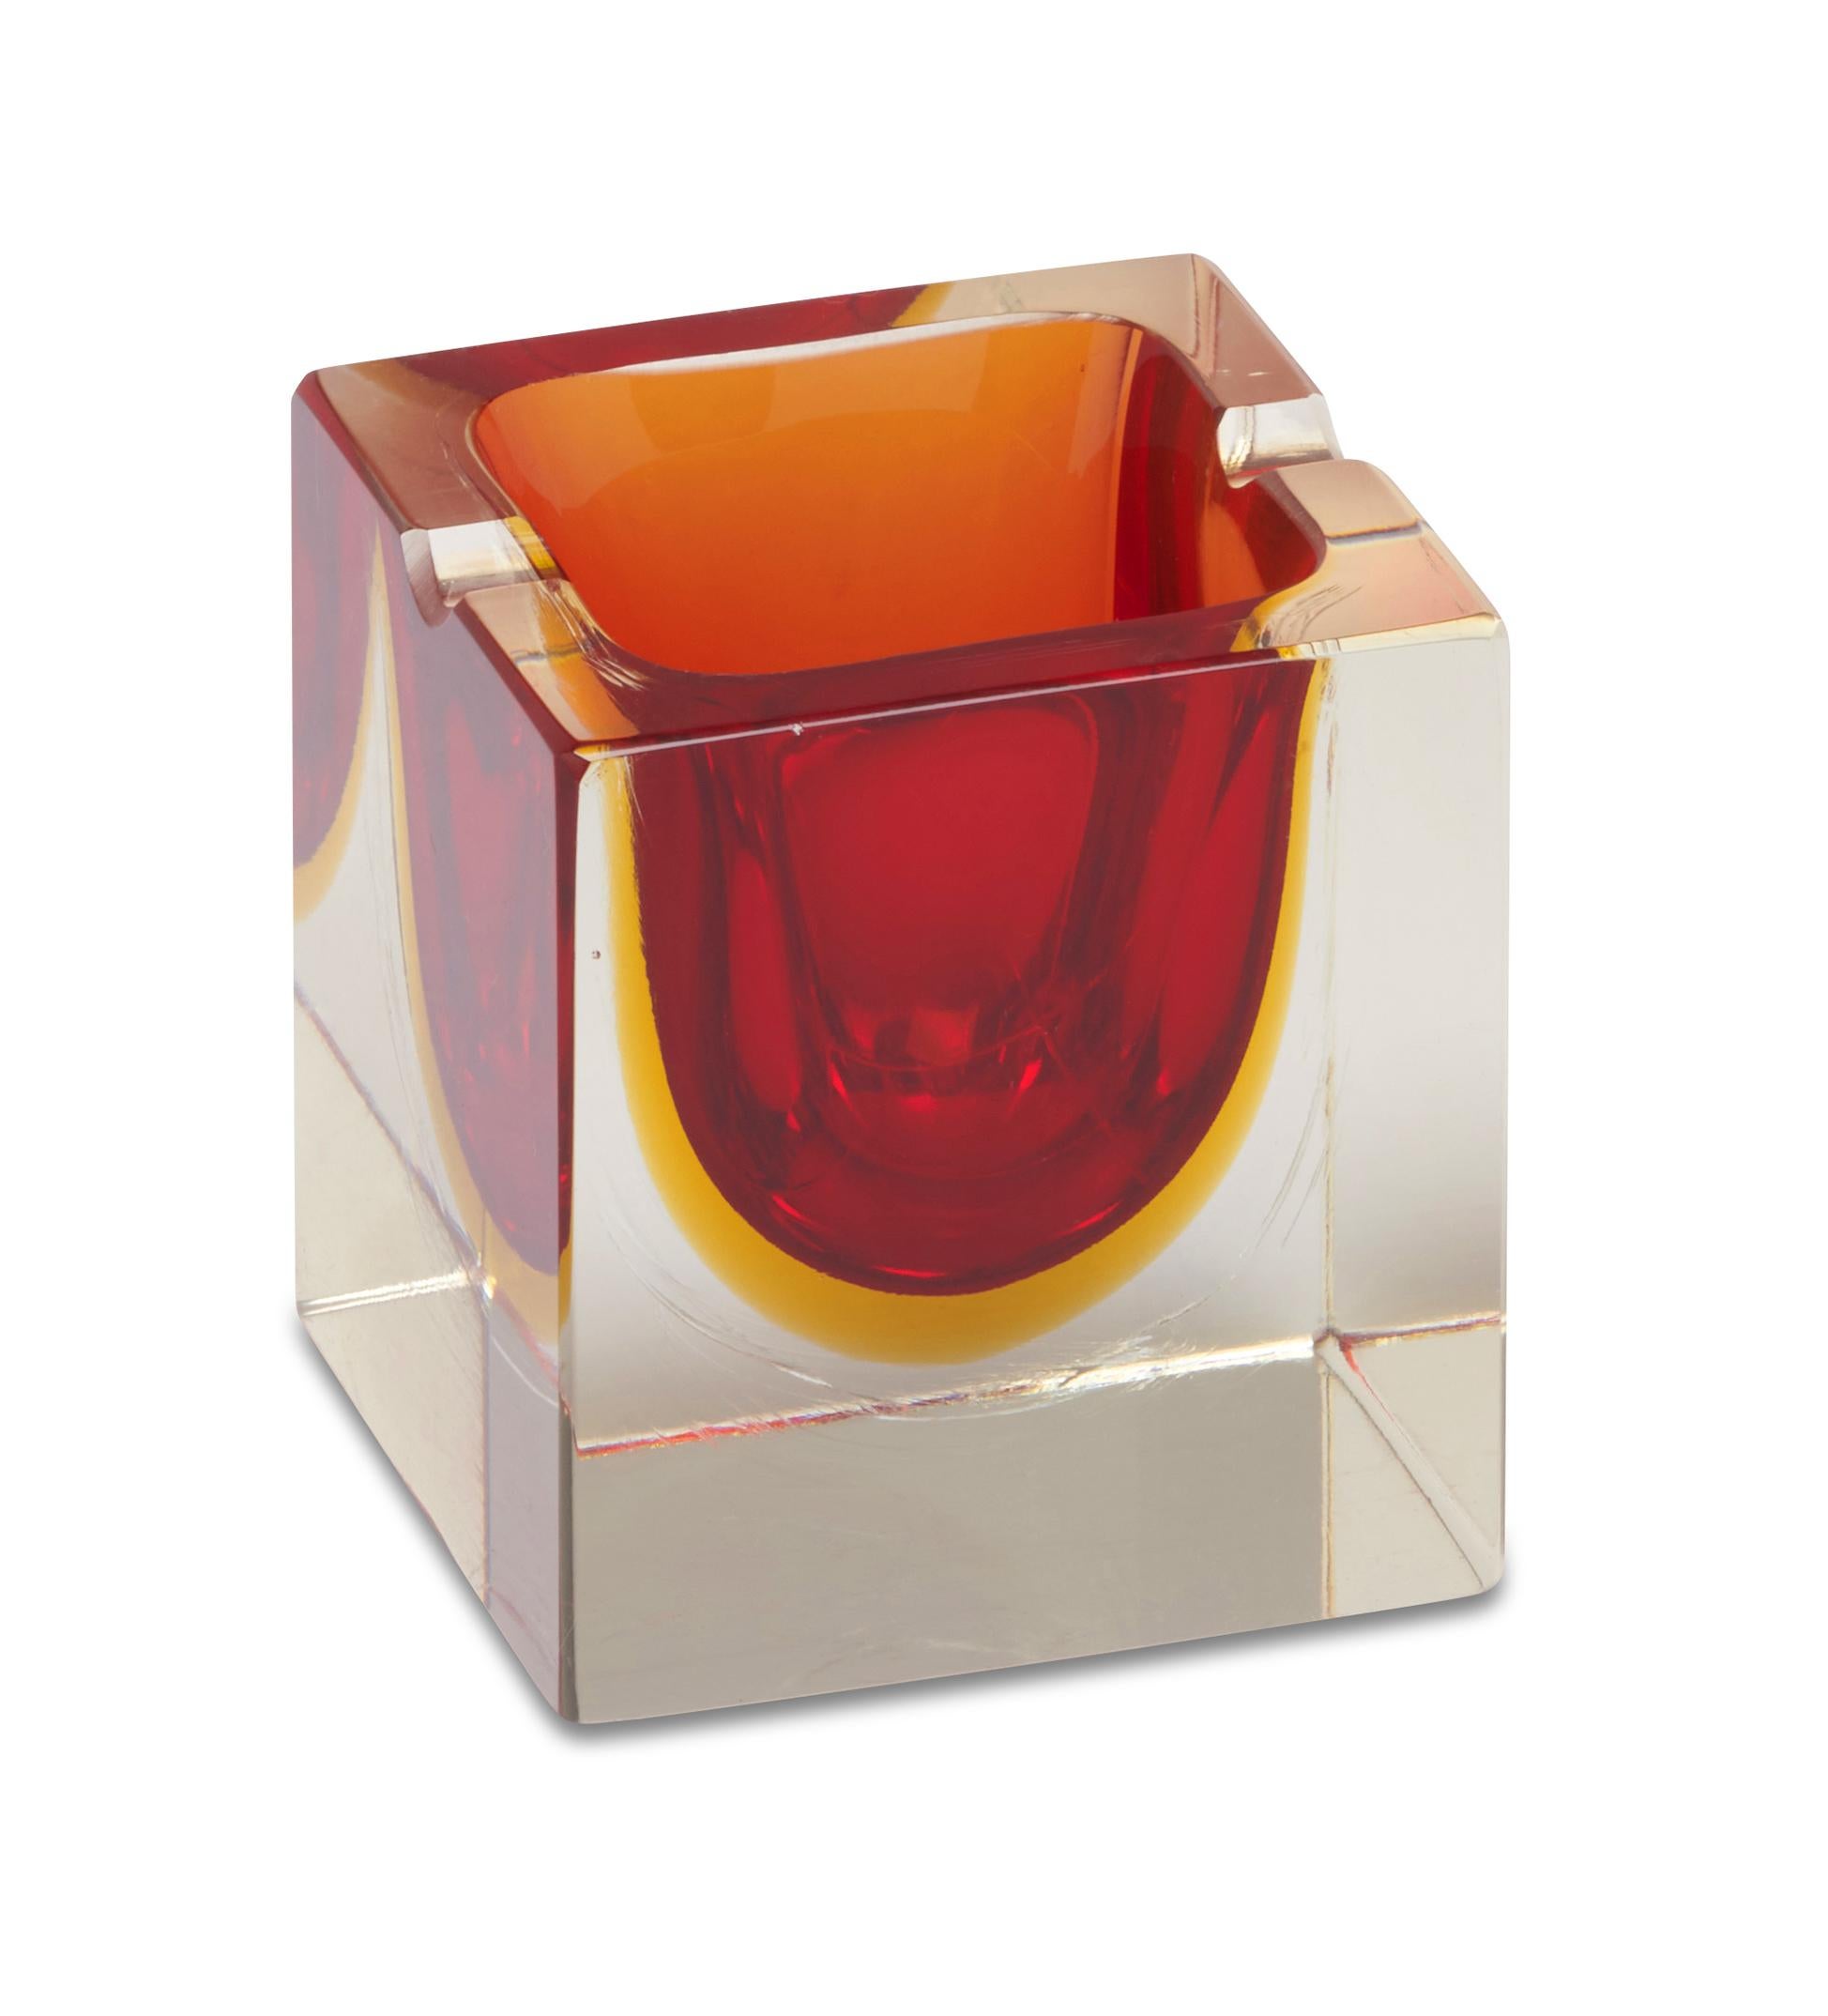 Flavio Poli (1900-1984) war ein italienischer Glasdesigner, der für seine meisterhaften Vasen und Lampen bekannt war. Seine untergetauchten Glaskörper, die durch Überlagerung von transparenten Farben und Texturen entstanden, wurden später mit dem